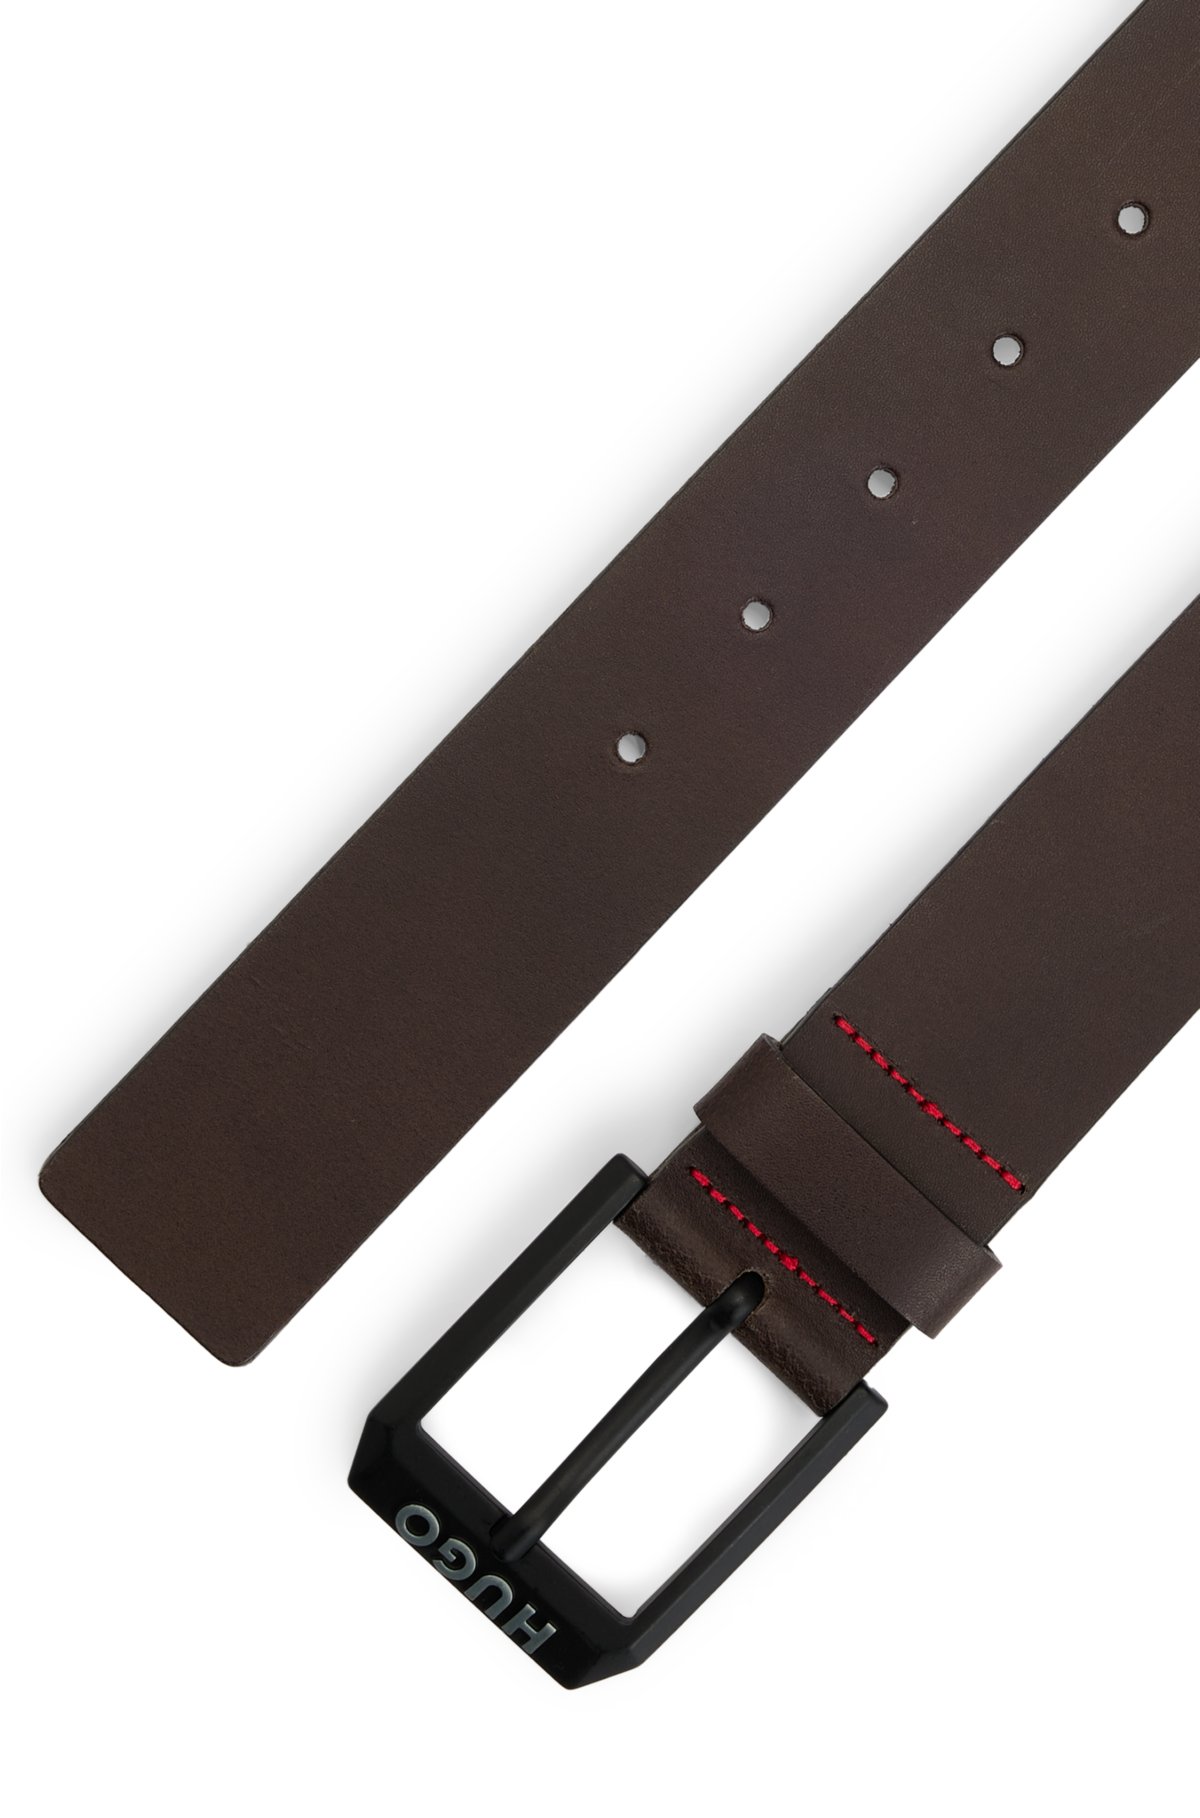 HUGO - Leather belt with matte-black logo-trim buckle